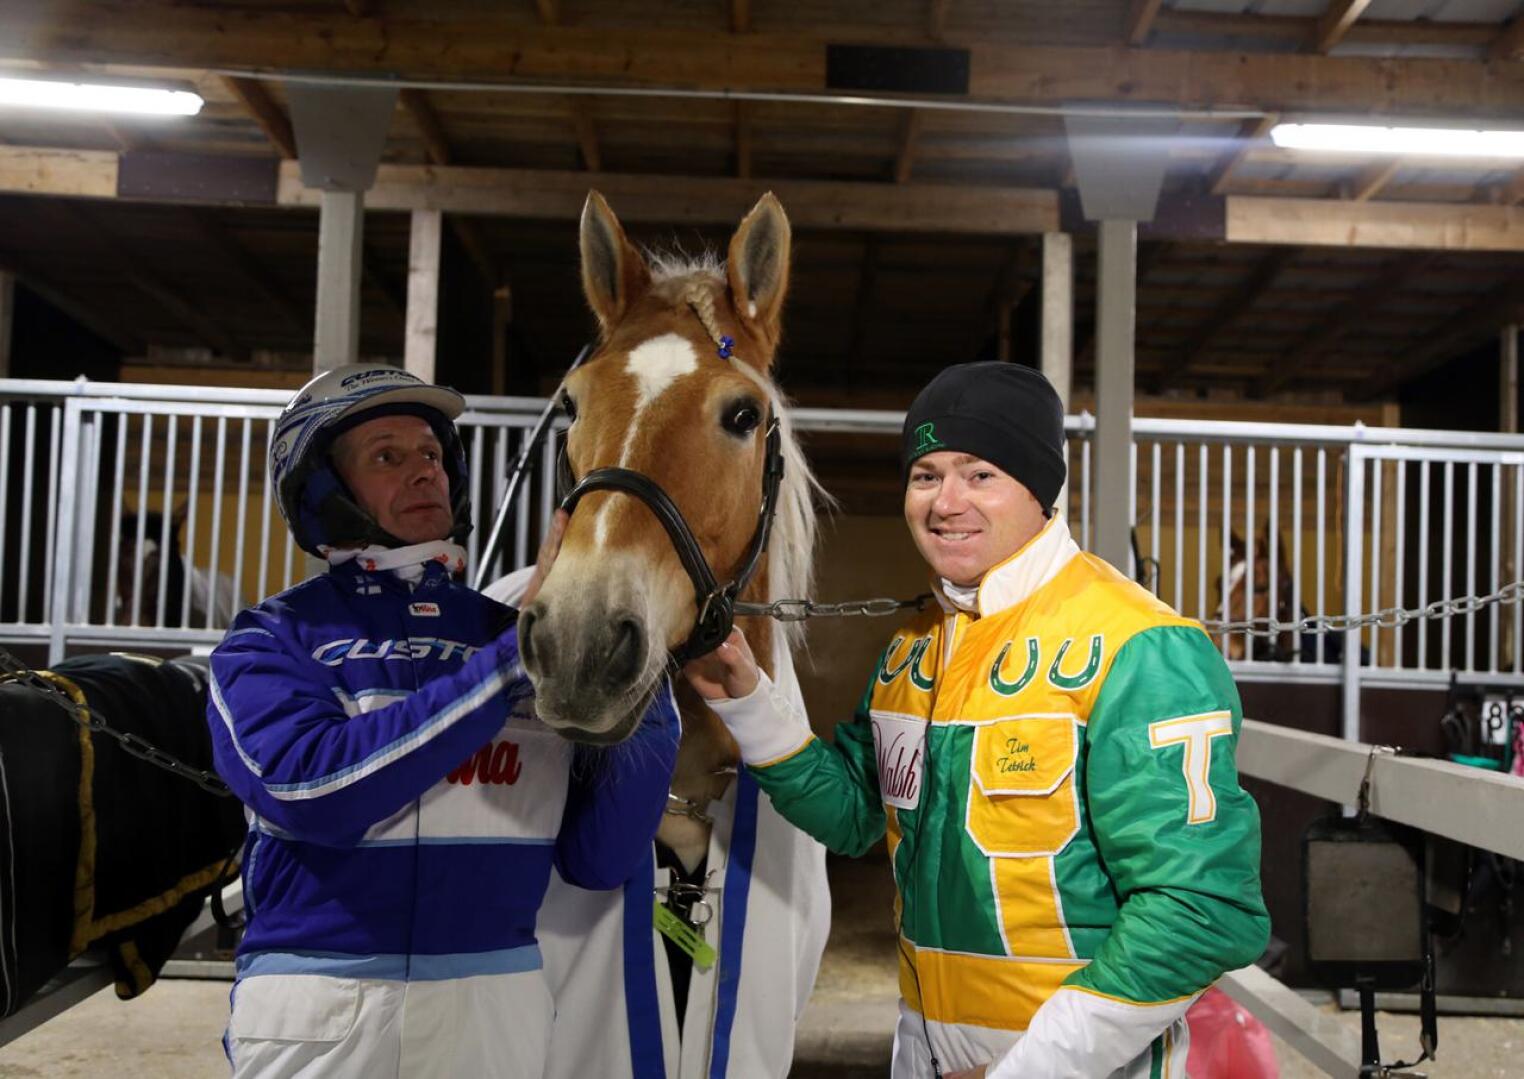 Pikku-Rytin edelliset voitot ovat Rovaniemeltä maaliskuussa sekä joulukuulta Arctic Horse-raveissa, jossa ruunan rattailla istui amerikkalainen huippuohjastaja Tim Tetrick (oikealla). Pikku-Rytiä pitelemässä Jorma Kontio.